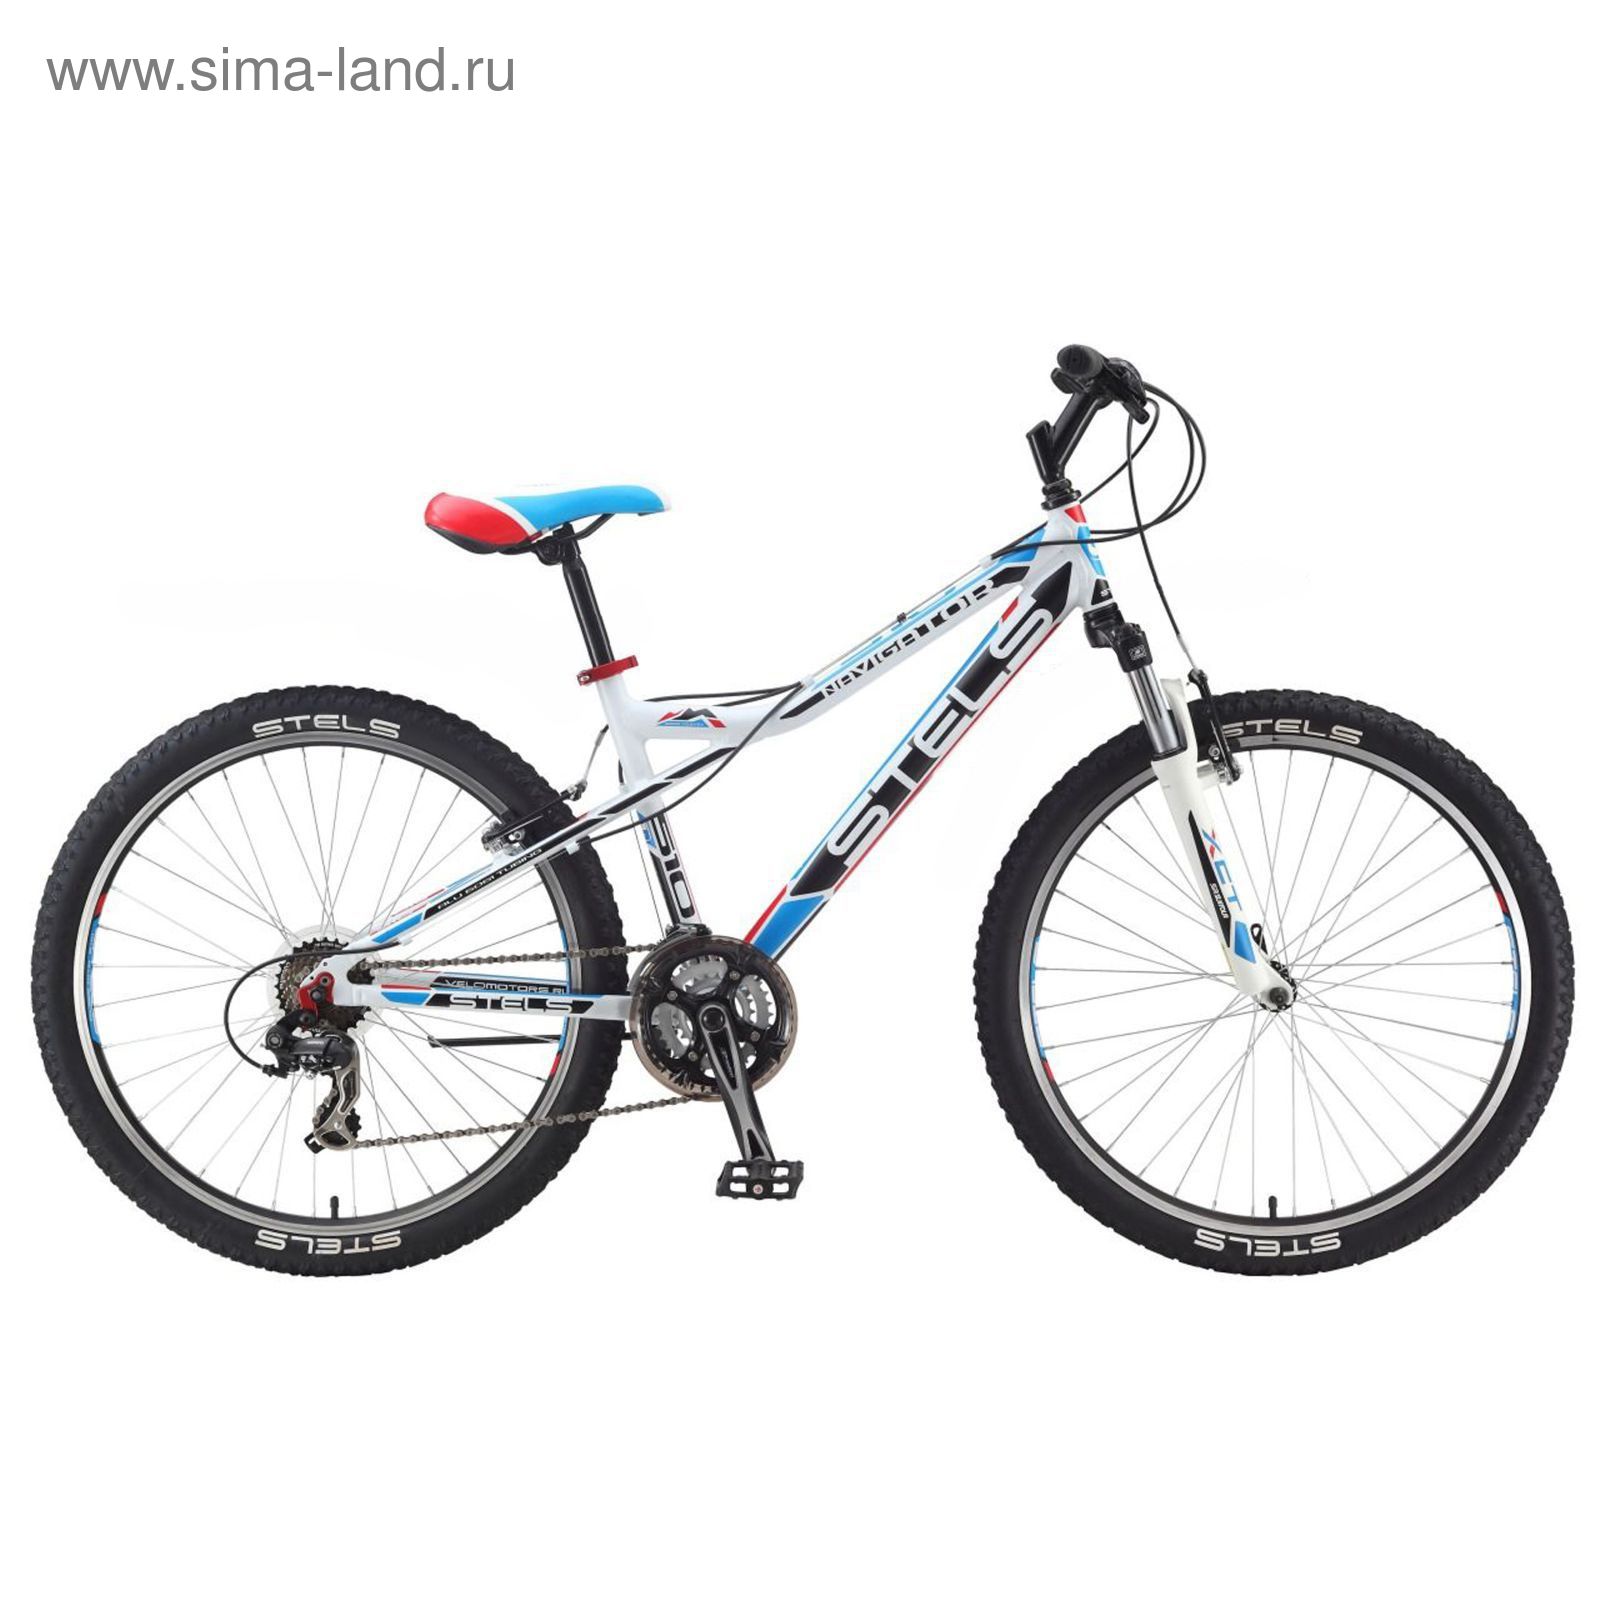 Велосипед 26" Stels Navigator-510 V, 2016, цвет белый/чёрный/голубой/красный, размер 16"